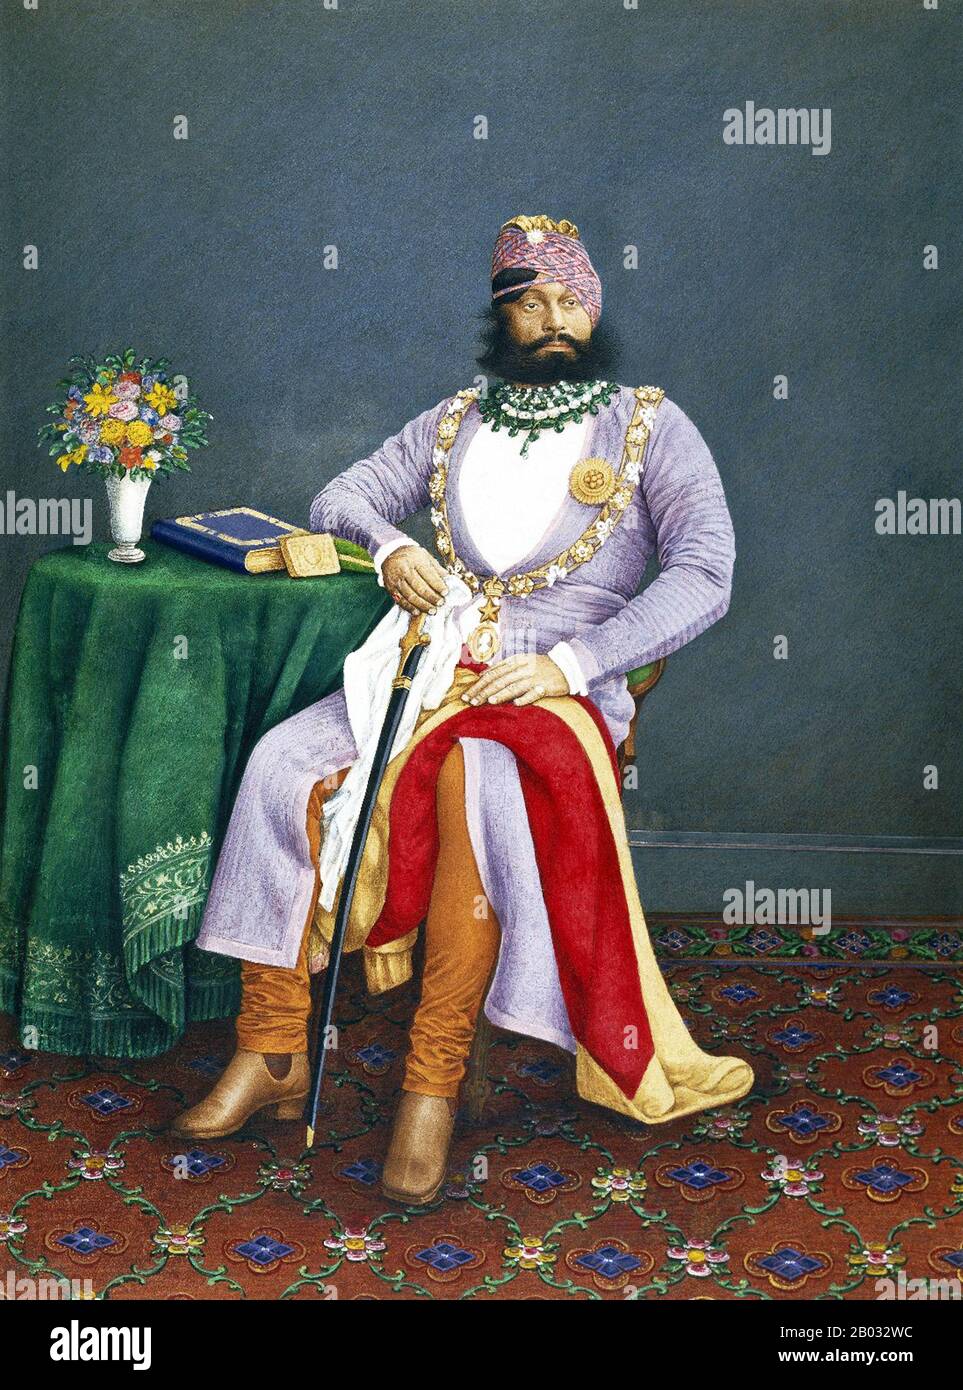 El reinado de Jaswant Singh II estuvo marcado por una prosperidad y reformas notables y obras de desarrollo. Estableció Tribunales de justicia, introdujo un sistema de liquidación de ingresos y reorganizó todos los departamentos estatales. También desarrolló la infraestructura del estado mediante la introducción de telégrafos, ferrocarriles (Jodhpur State Railway) y el desarrollo de carreteras. Formó el cuerpo de Caballería del Servicio Imperial, que más tarde prestó servicio activo en la primera Guerra Mundial. Fue honrado y creó el Gran Comandante Caballero de la Orden Más Exaltada de la Estrella de la India en 1875. Foto de stock